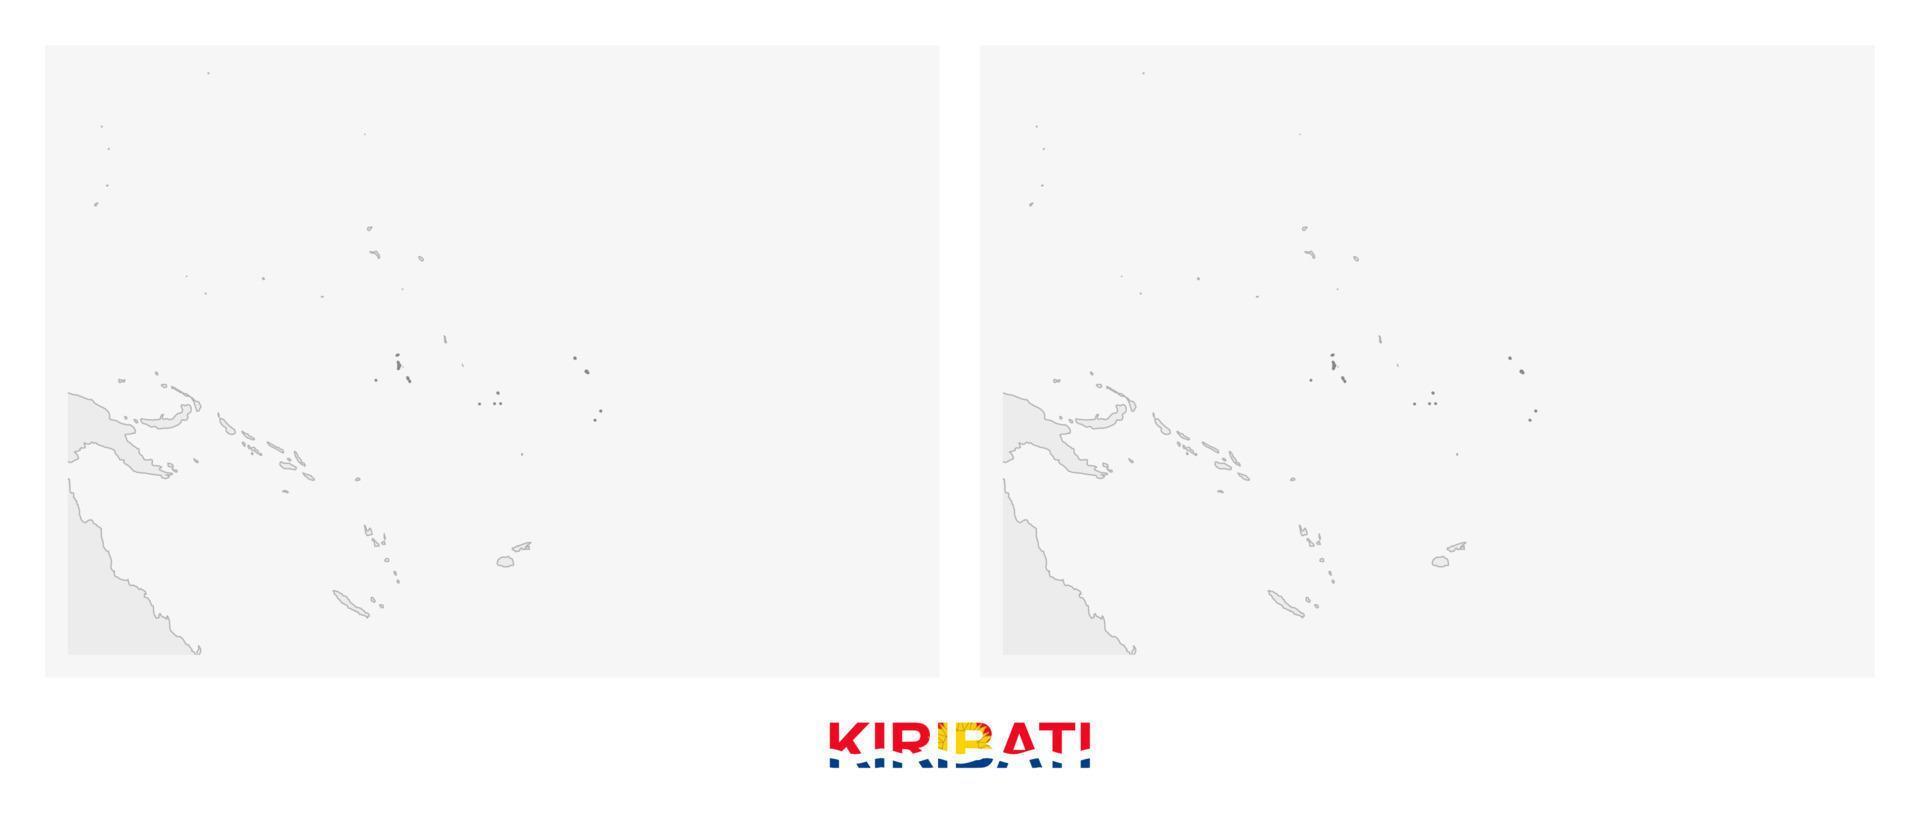 twee versies van de kaart van kiribati, met de vlag van Kiribati en gemarkeerd in donker grijs. vector